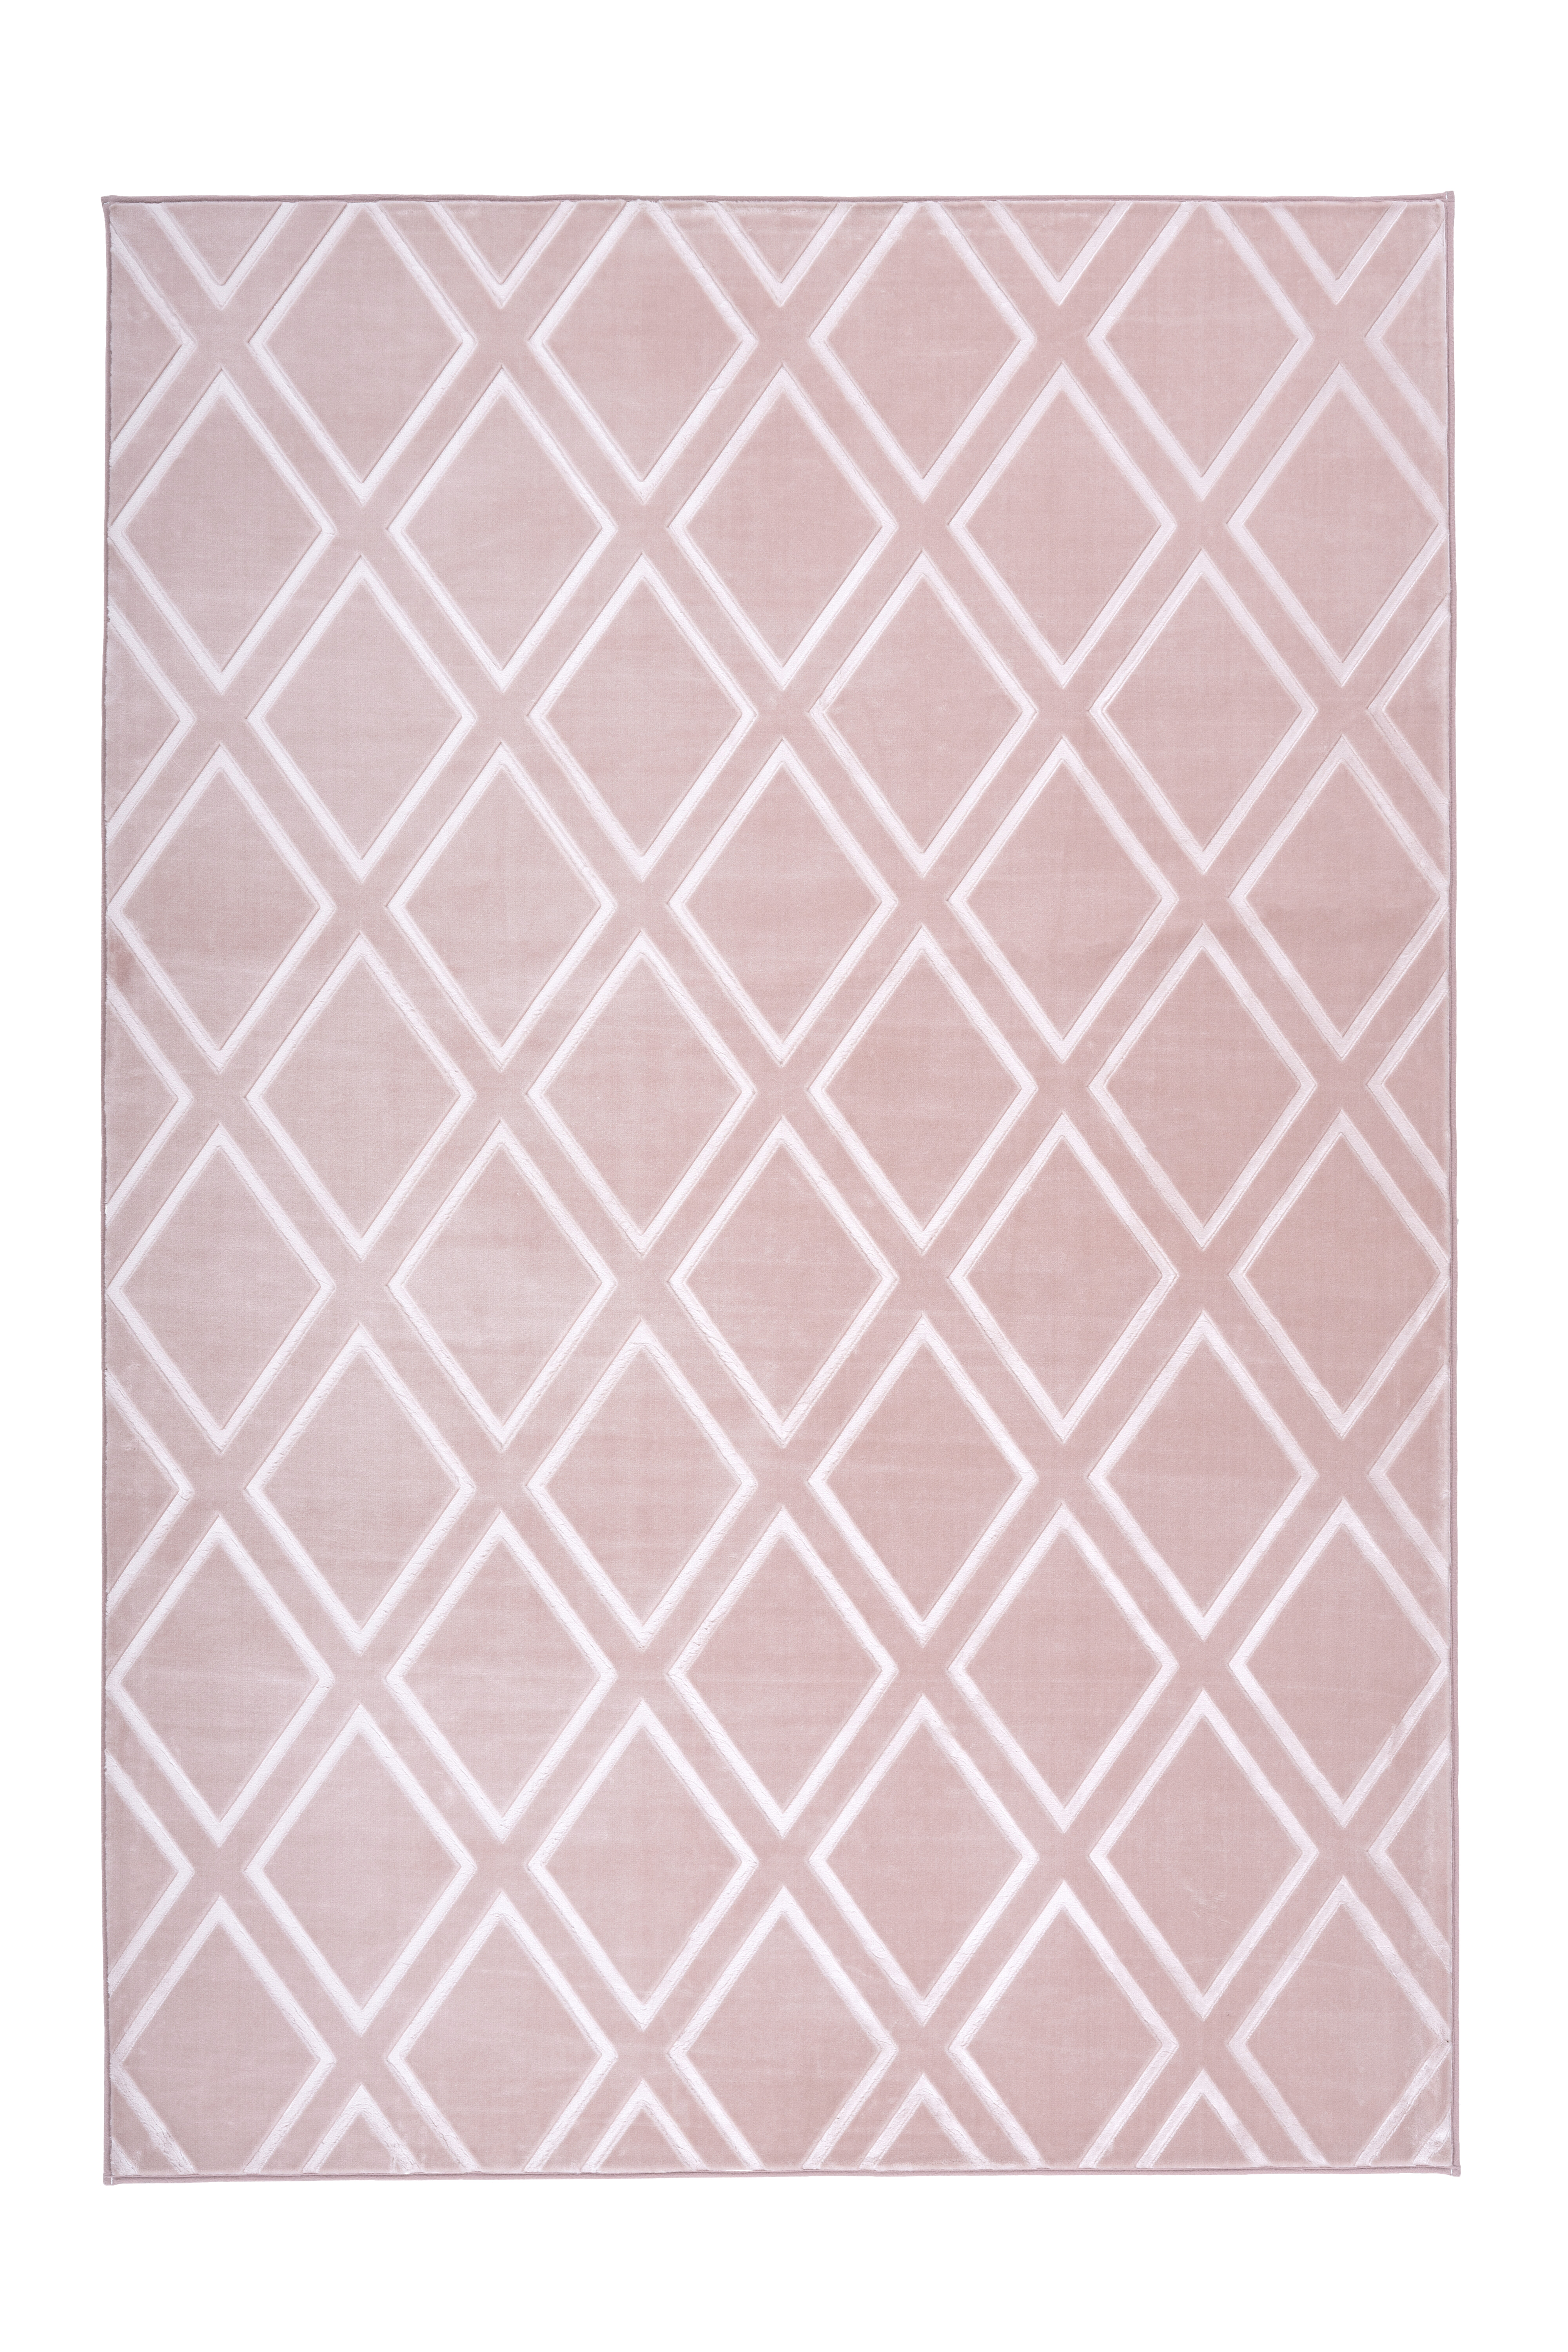 Kayoom Vloerkleed 'Monroe 300' kleur roze, 160 x 230cm